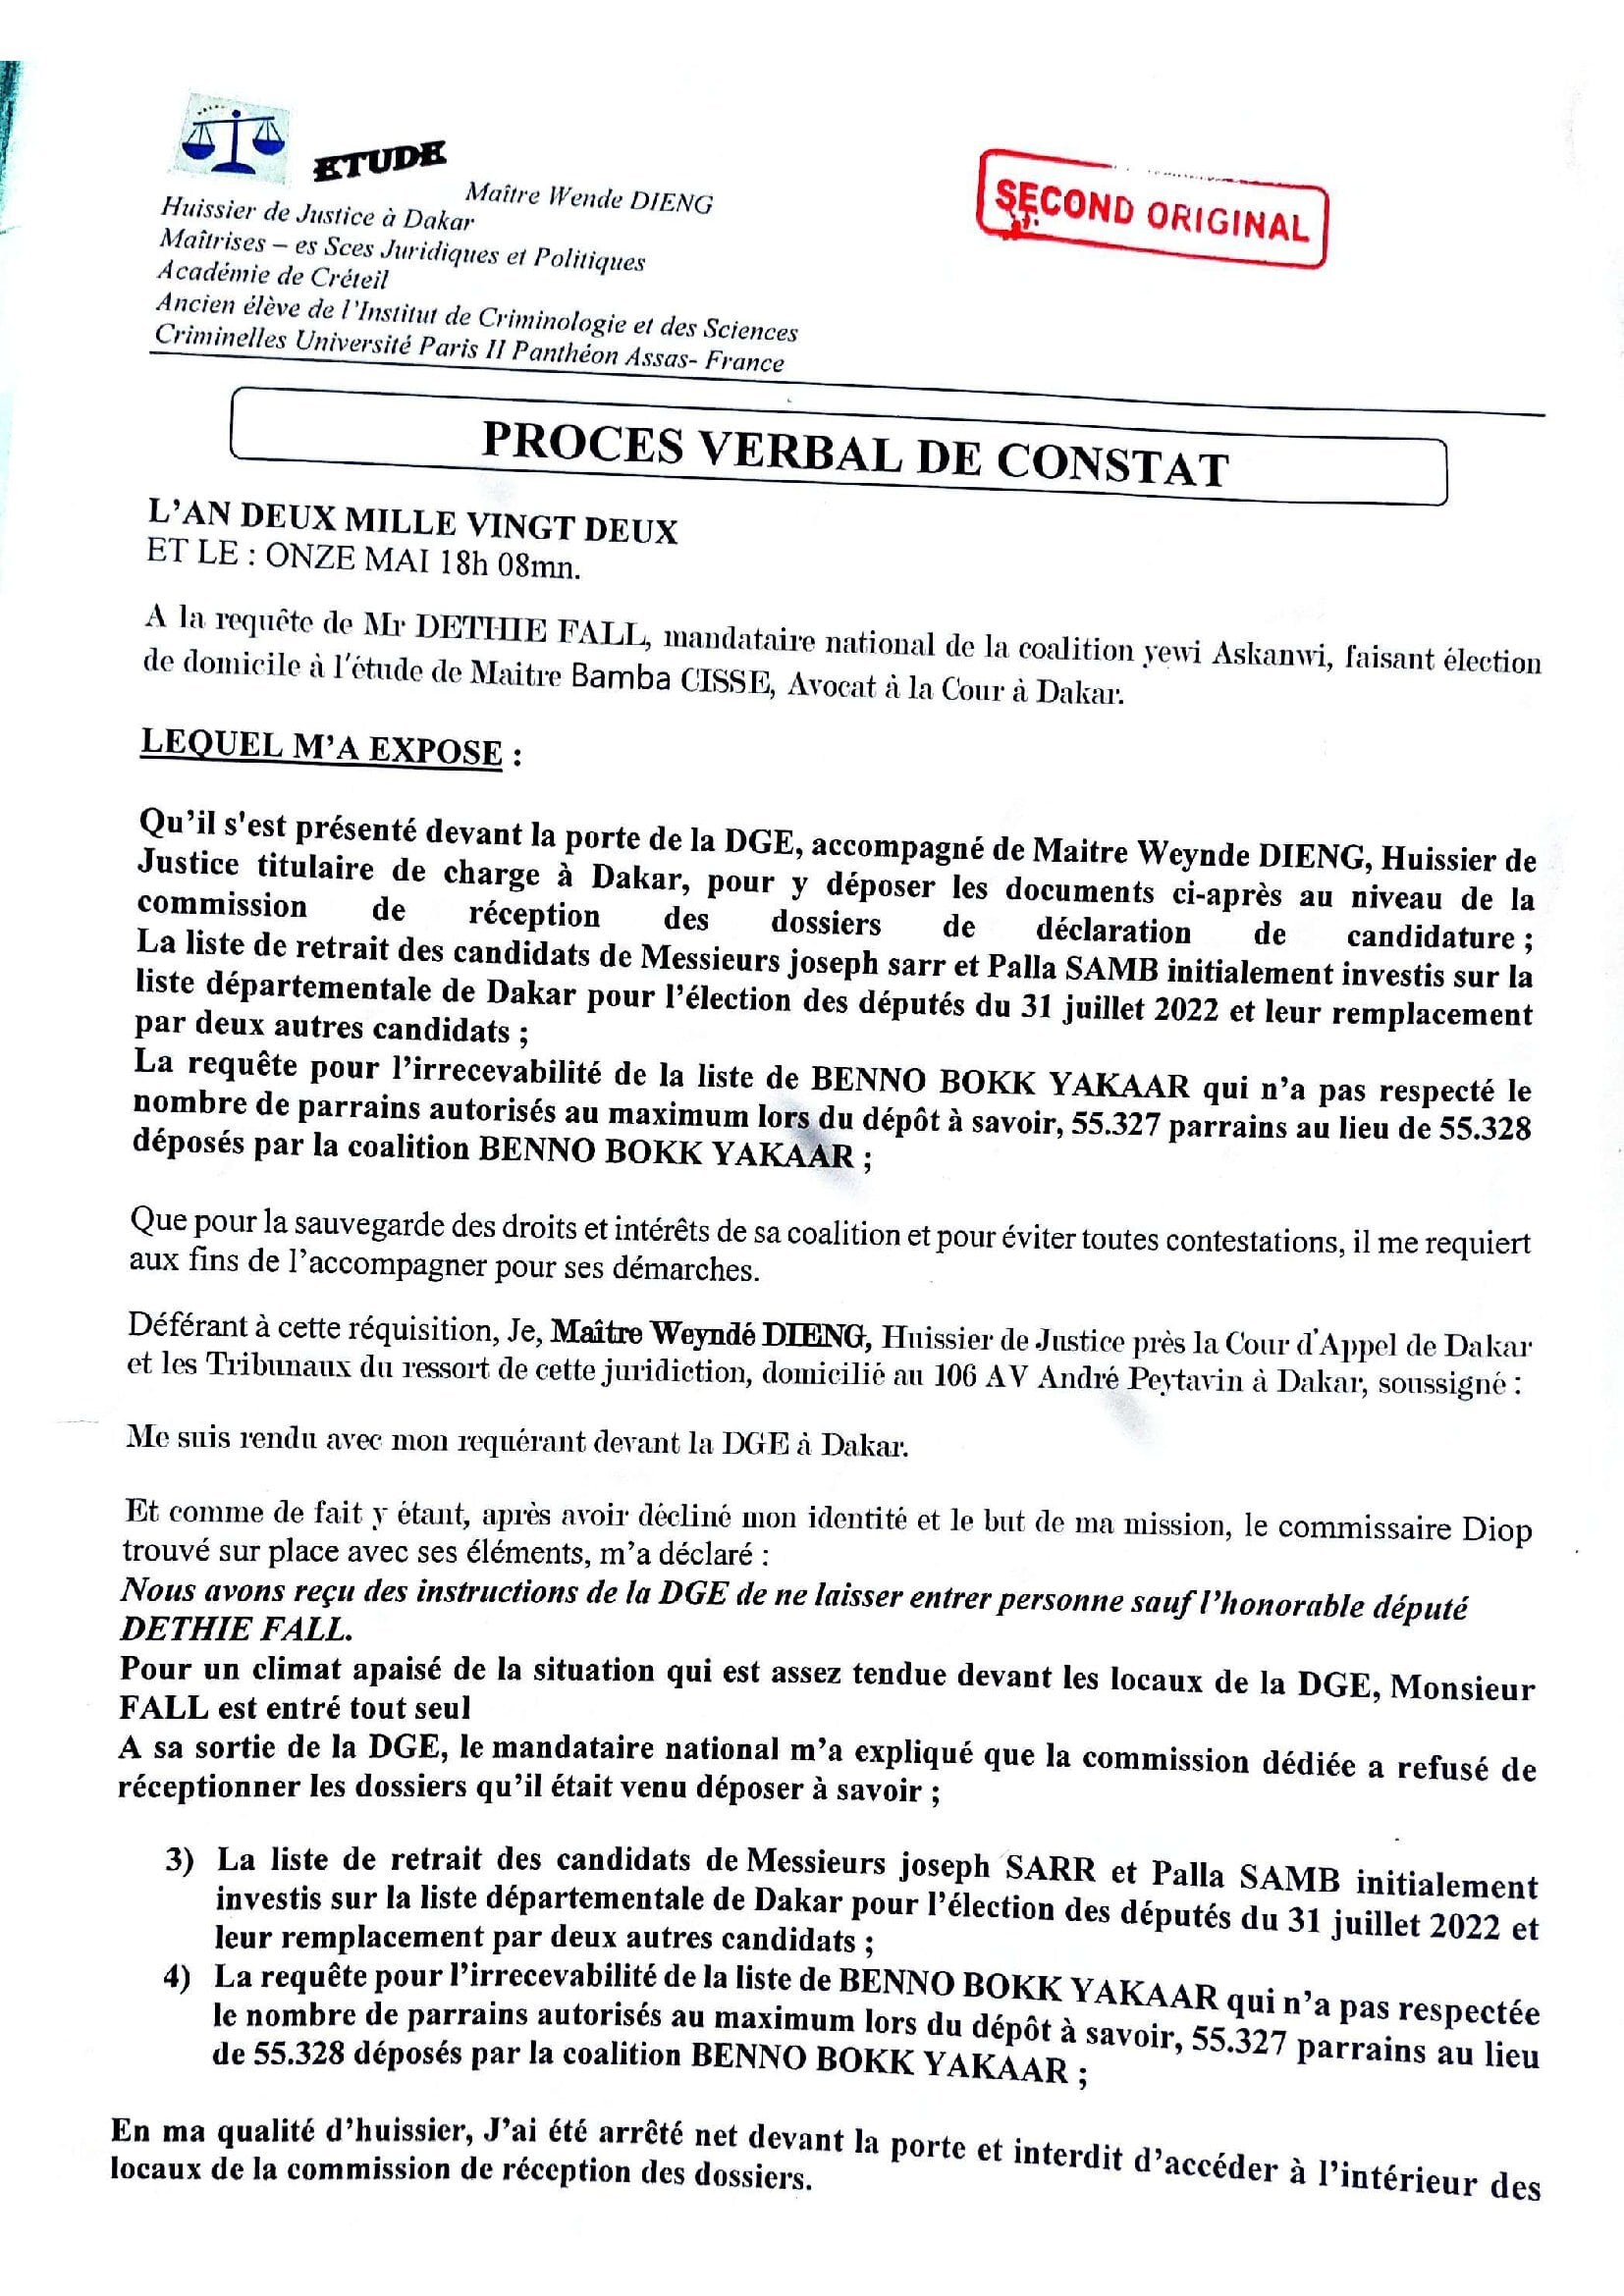 PROCES VERBAL DE CONSTAT - ABUS DE POUVOIR DE LA DGE_00001.jpg